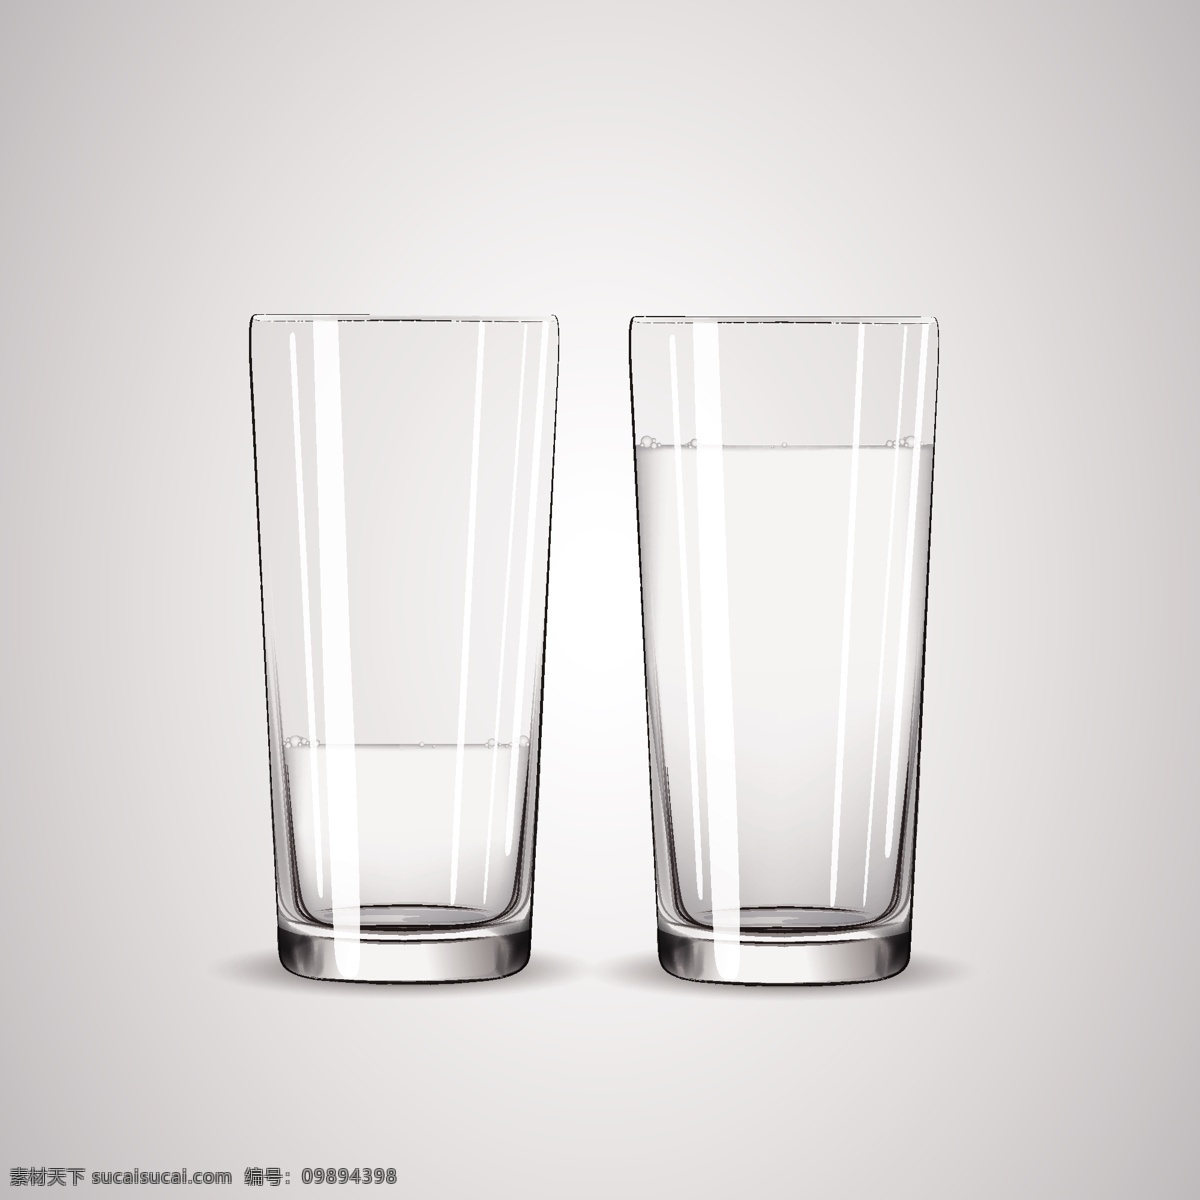 透明玻璃水杯 透明 玻璃杯 水杯 杯子 茶杯 酒杯 插画 背景 海报 画册 生活百科 生活用品 白色